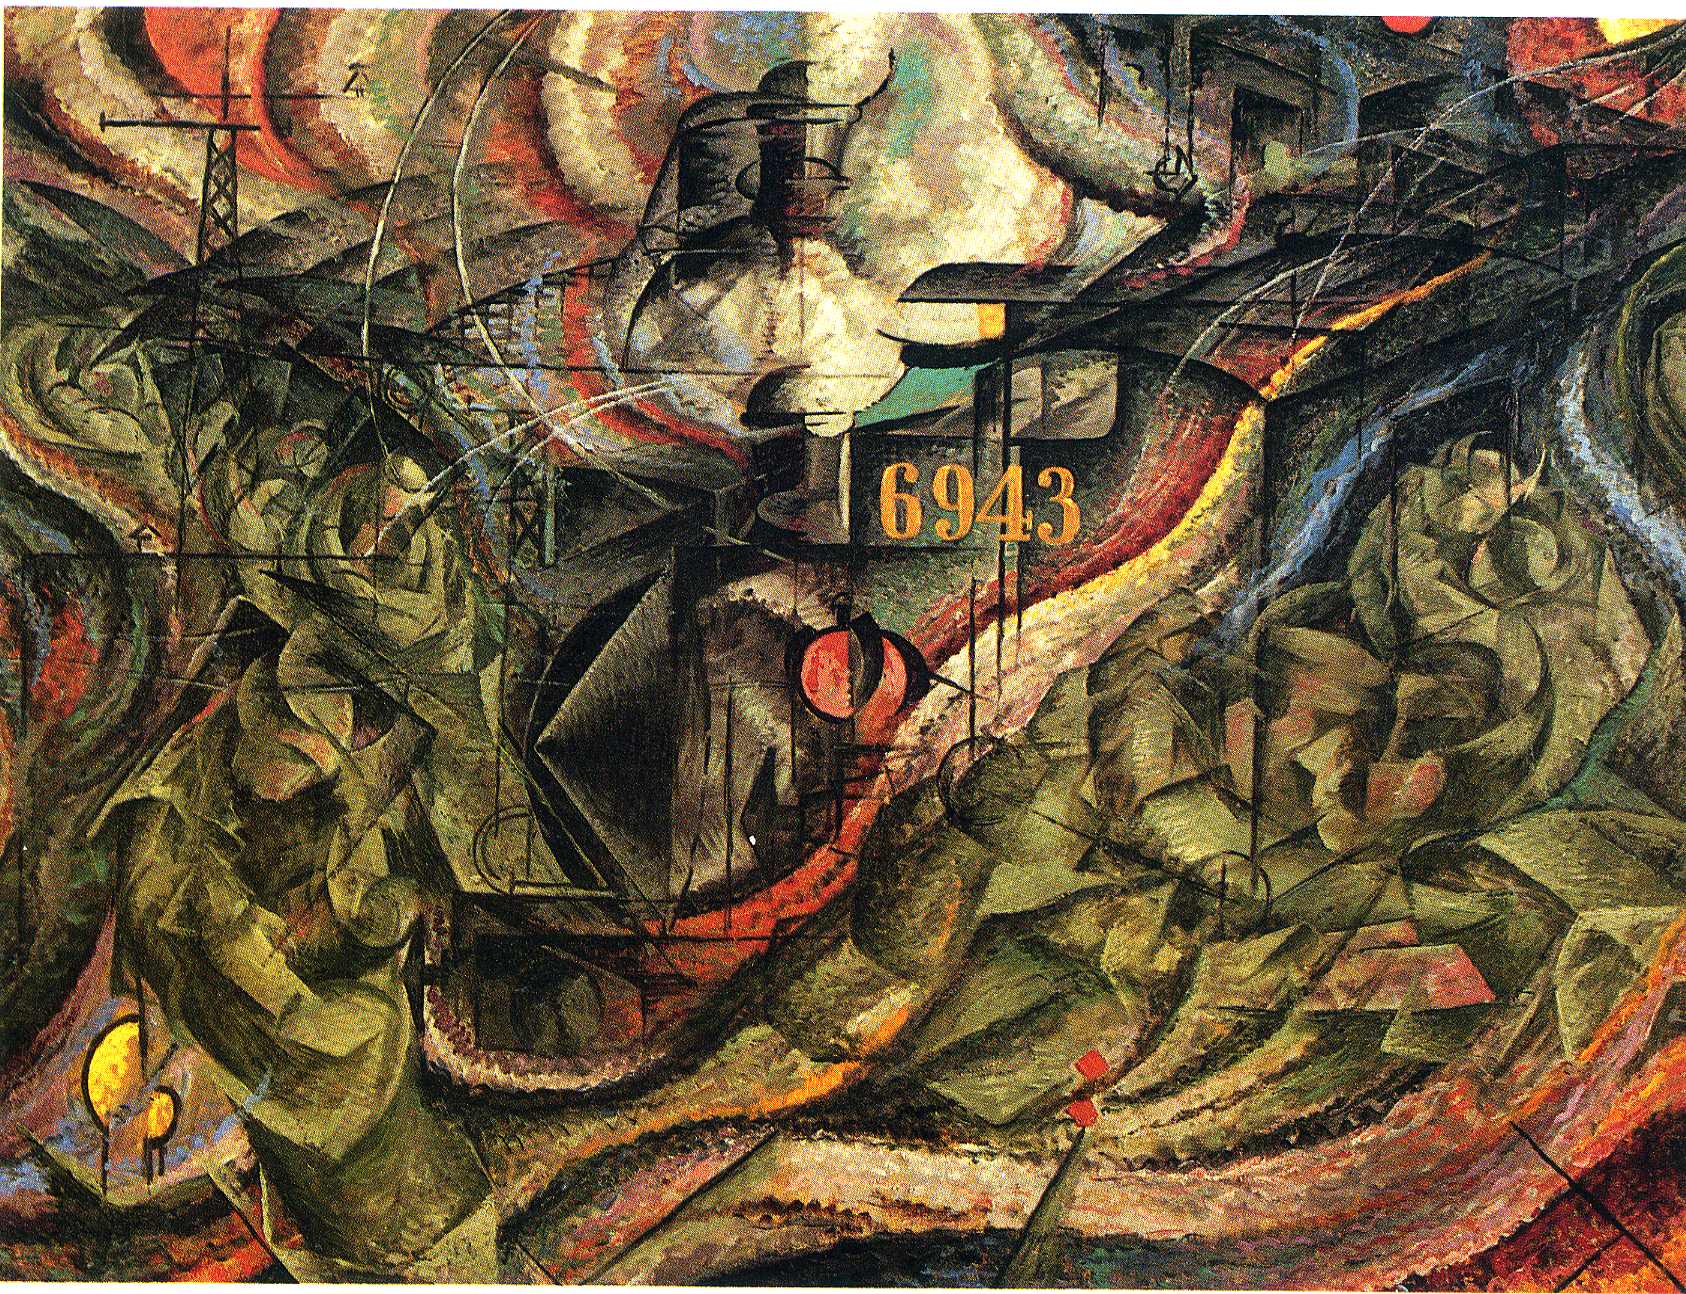 Geisteszustände I: Der Abschied by Umberto Boccioni - 1911 - 70.5 x 96.2 cm Museum of Modern Art